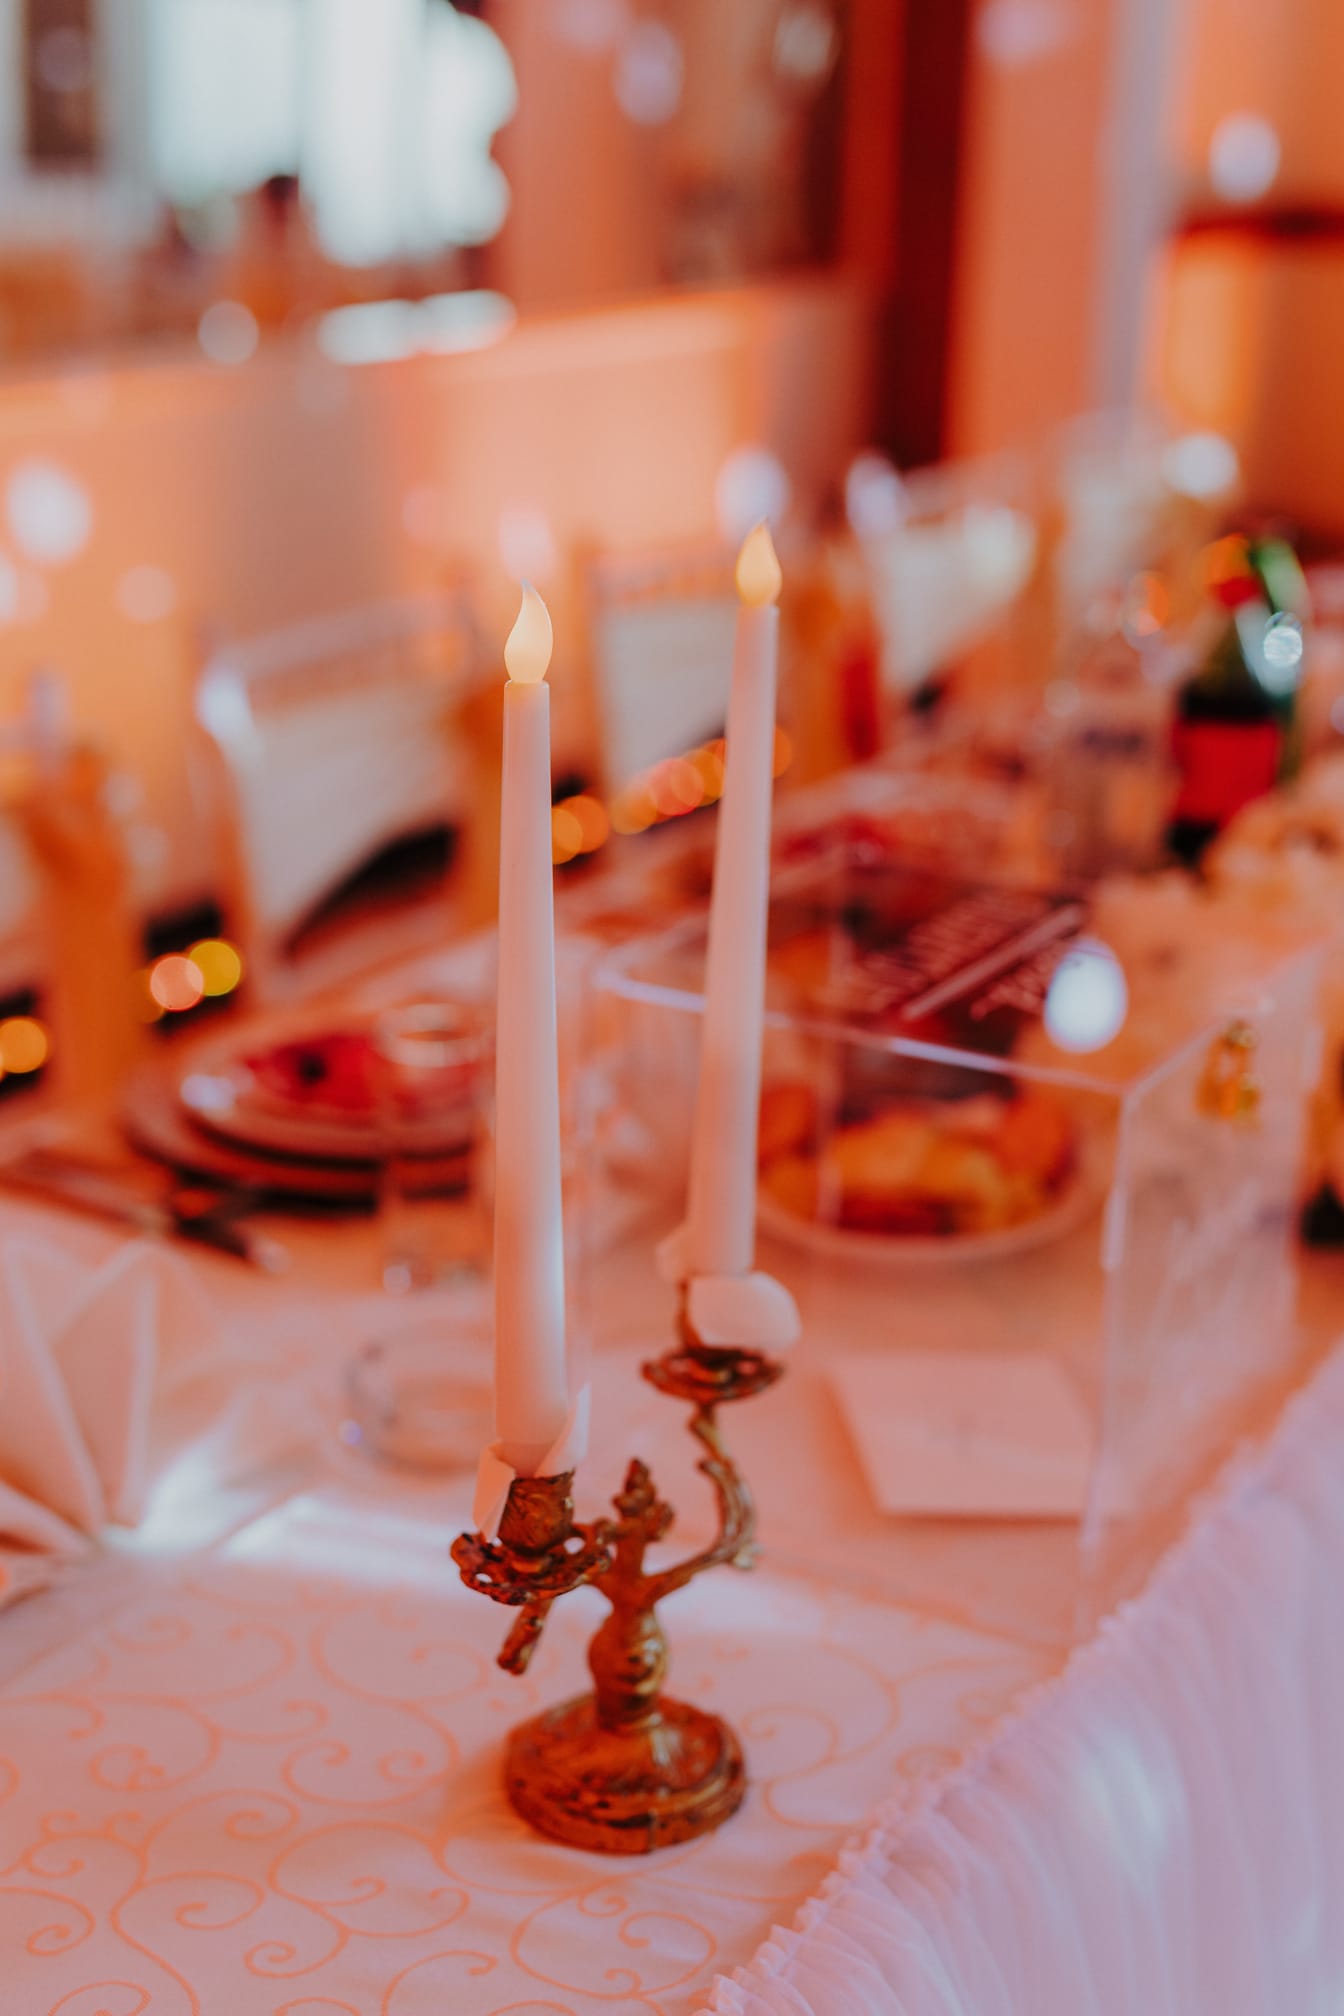 Umelé biele sviečky s falošnými plameňmi na stole v mieste konania svadby